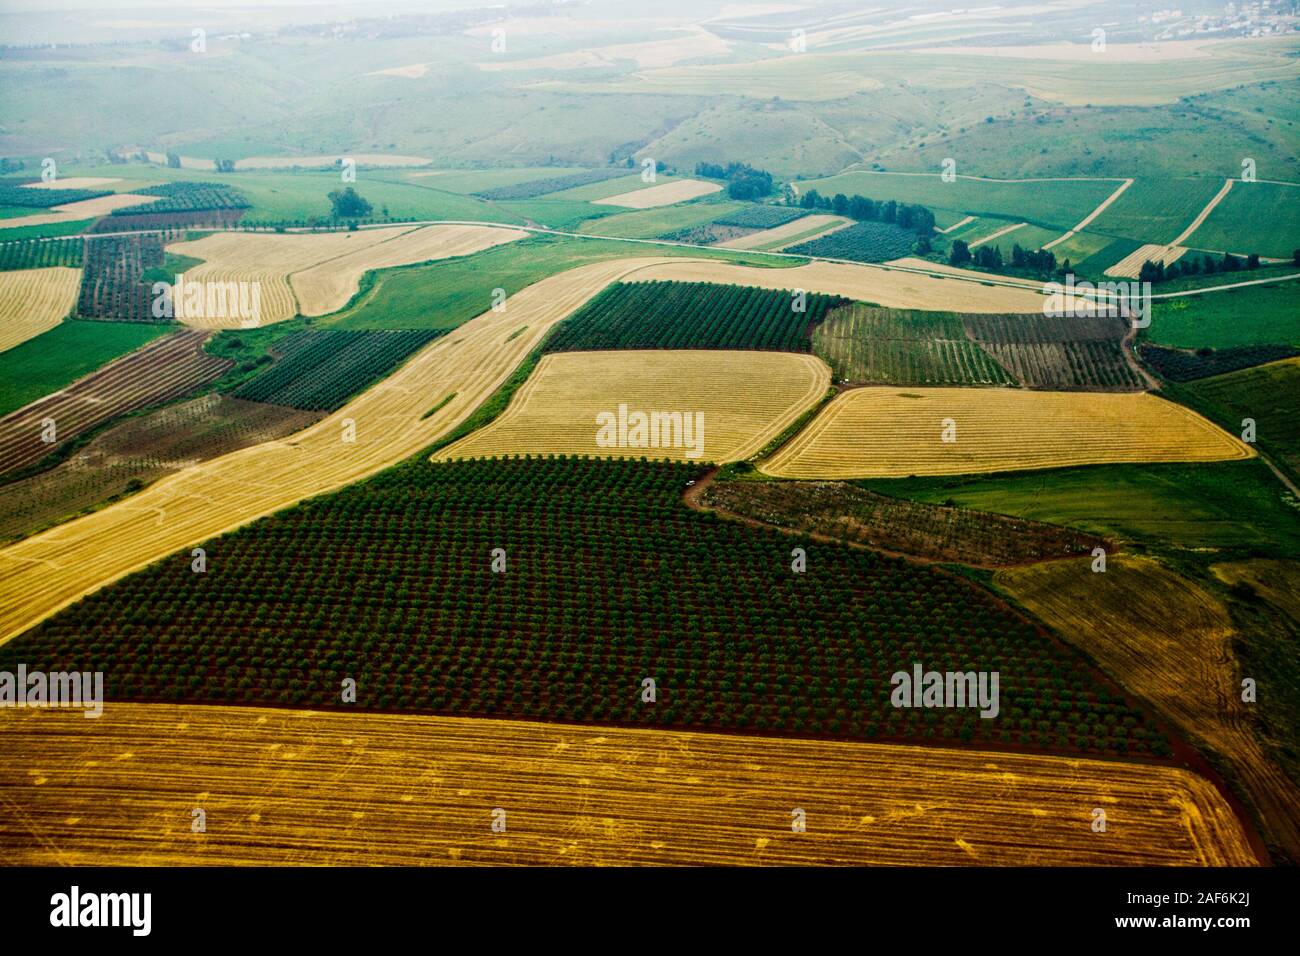 La fotografía aérea. Vista elevada de los campos agrícolas en el valle de Jezreel, Israel Foto de stock